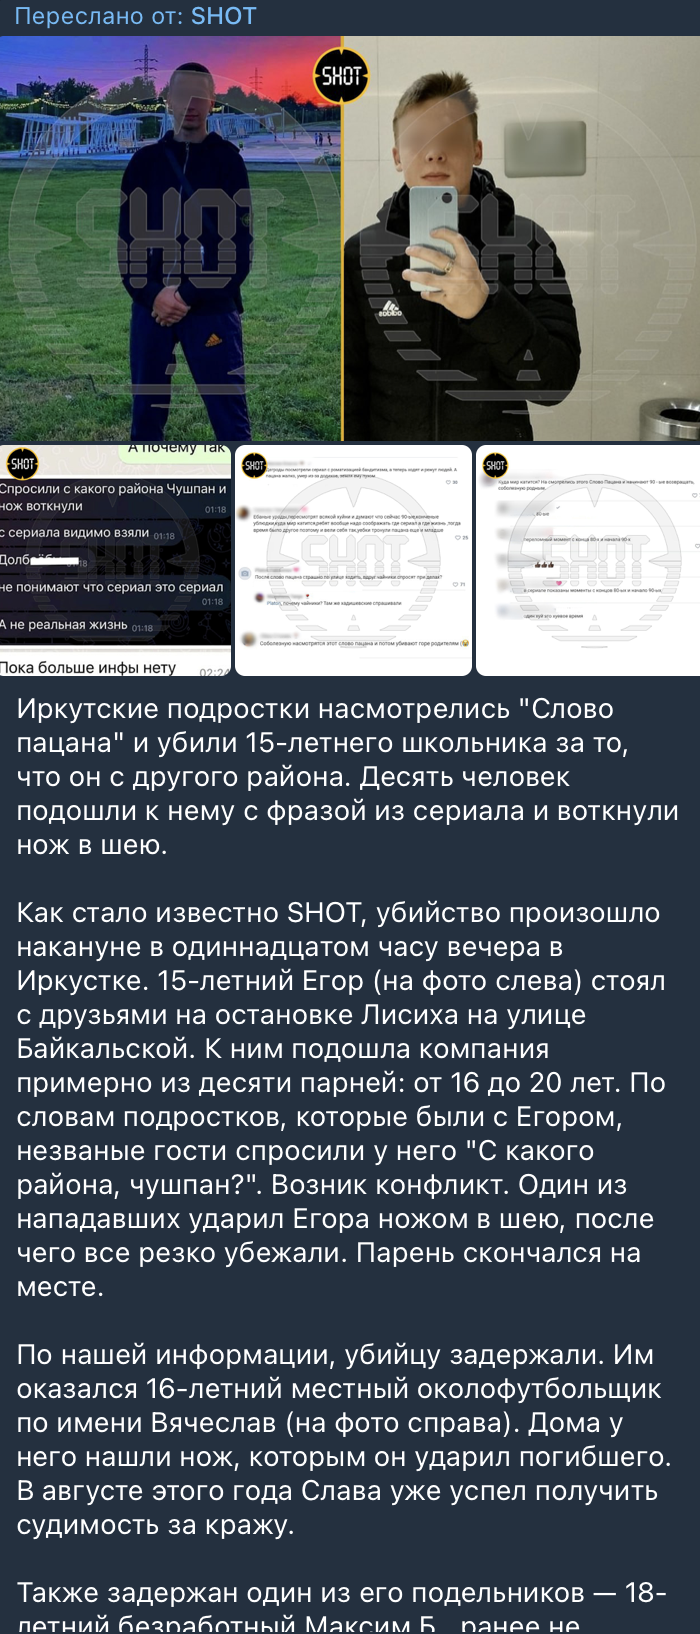 иркутские подростки насмотрелись Слово пацана и убили 15-летнего школьника за то что он с другого района